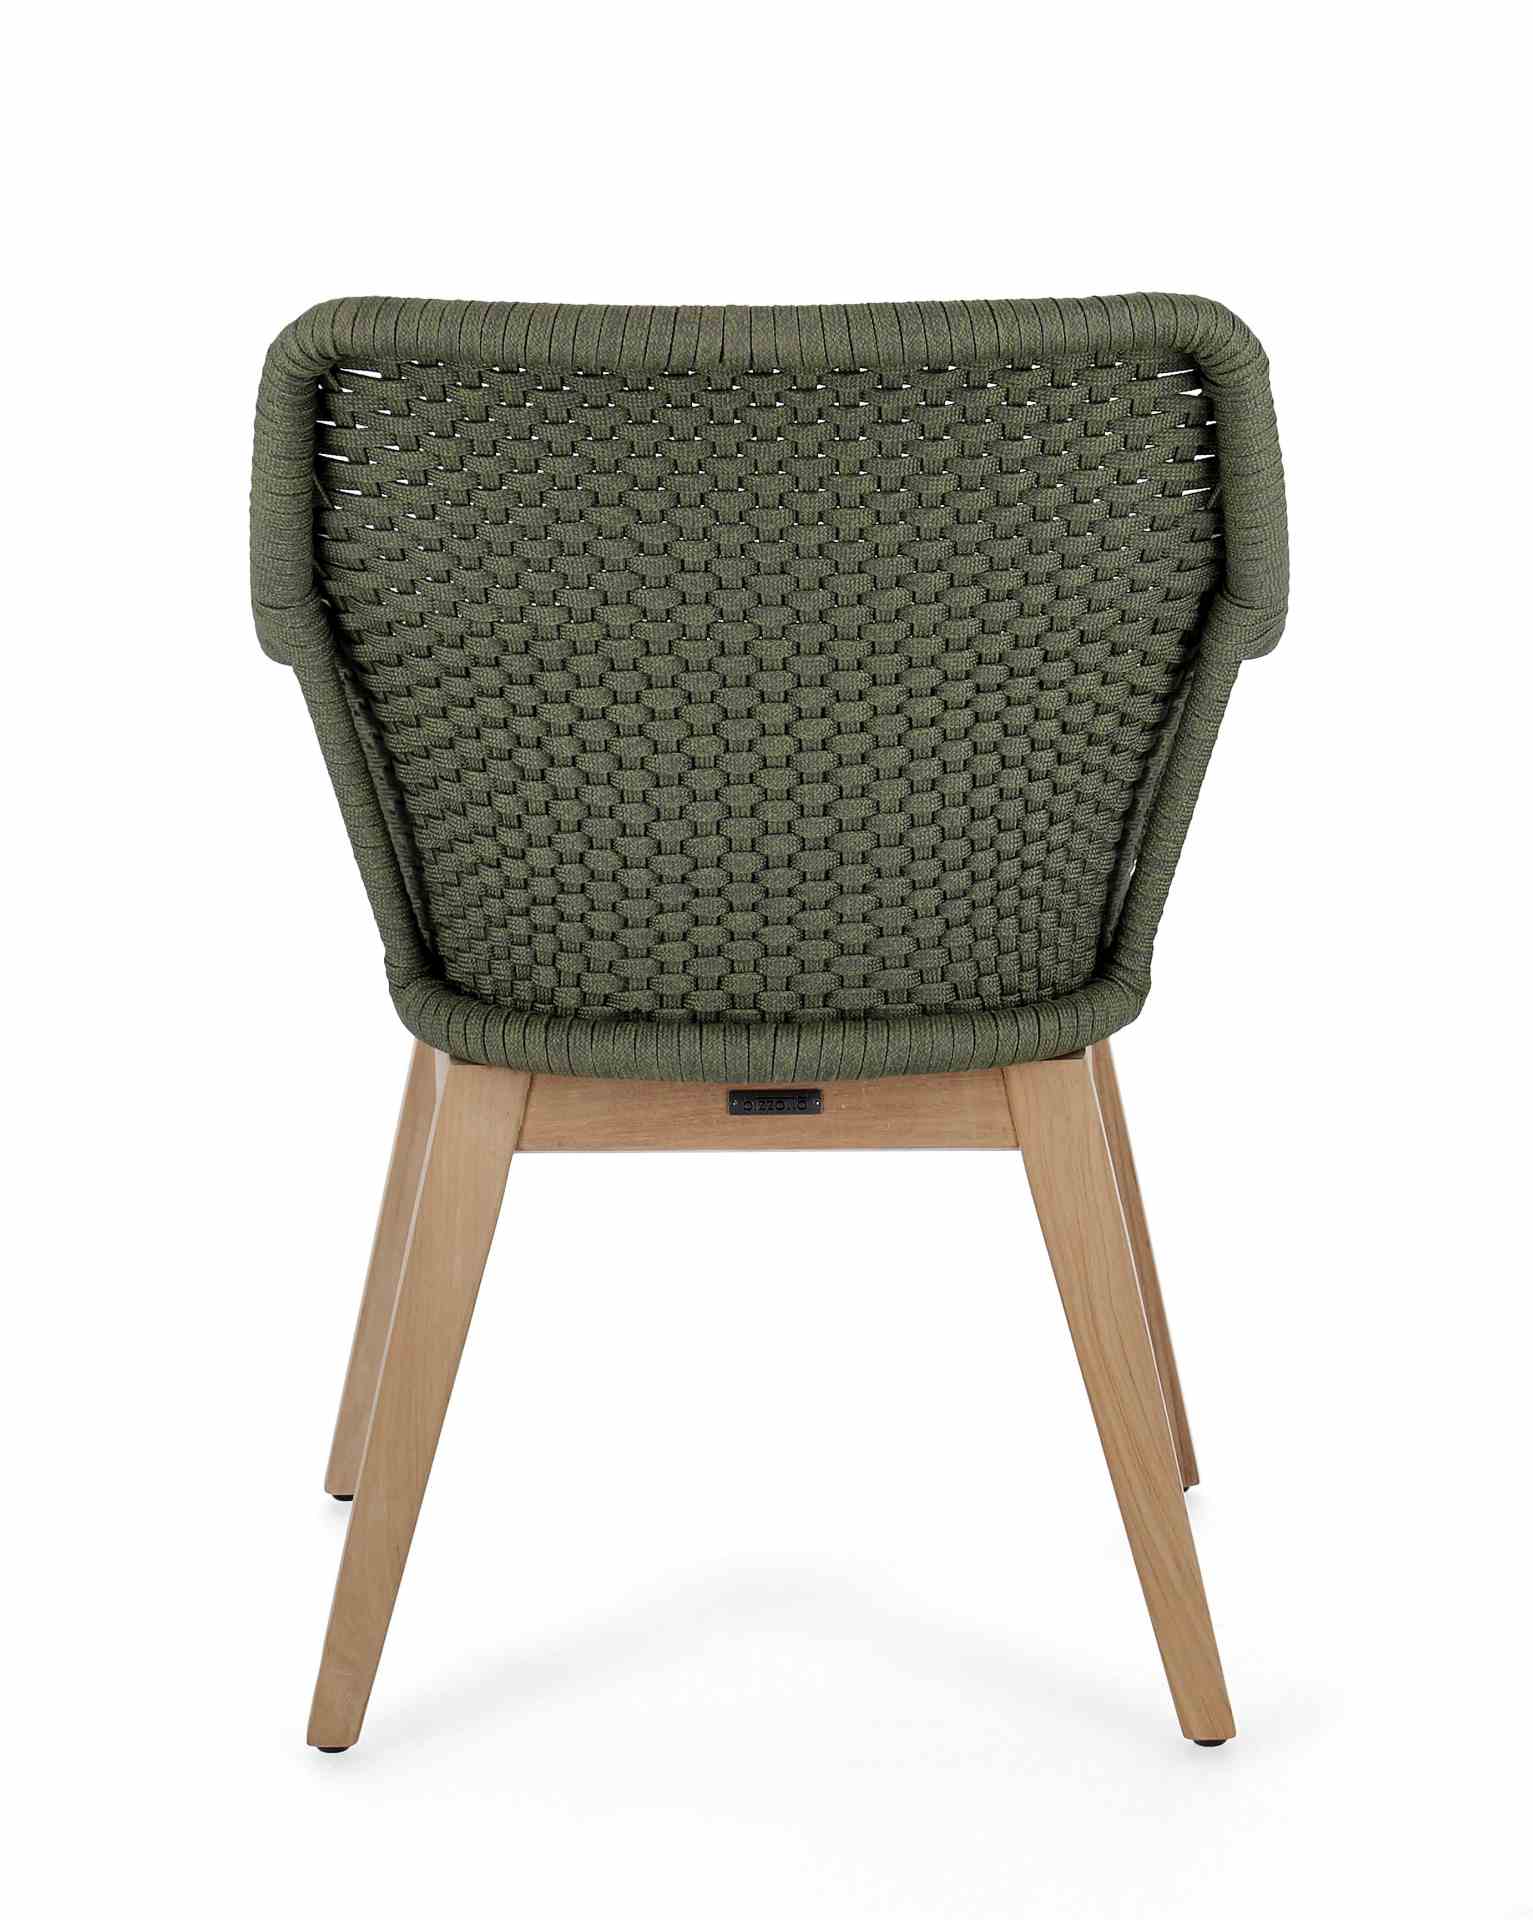 Der Gartenstuhl Allison überzeugt mit seinem modernen Design. Gefertigt wurde er aus Olefin-Stoff, welcher einen grünen Farbton besitzt. Das Gestell ist aus Teakholz und hat eine natürliche Farbe. Der Stuhl verfügt über eine Sitzhöhe von 48 cm und ist für